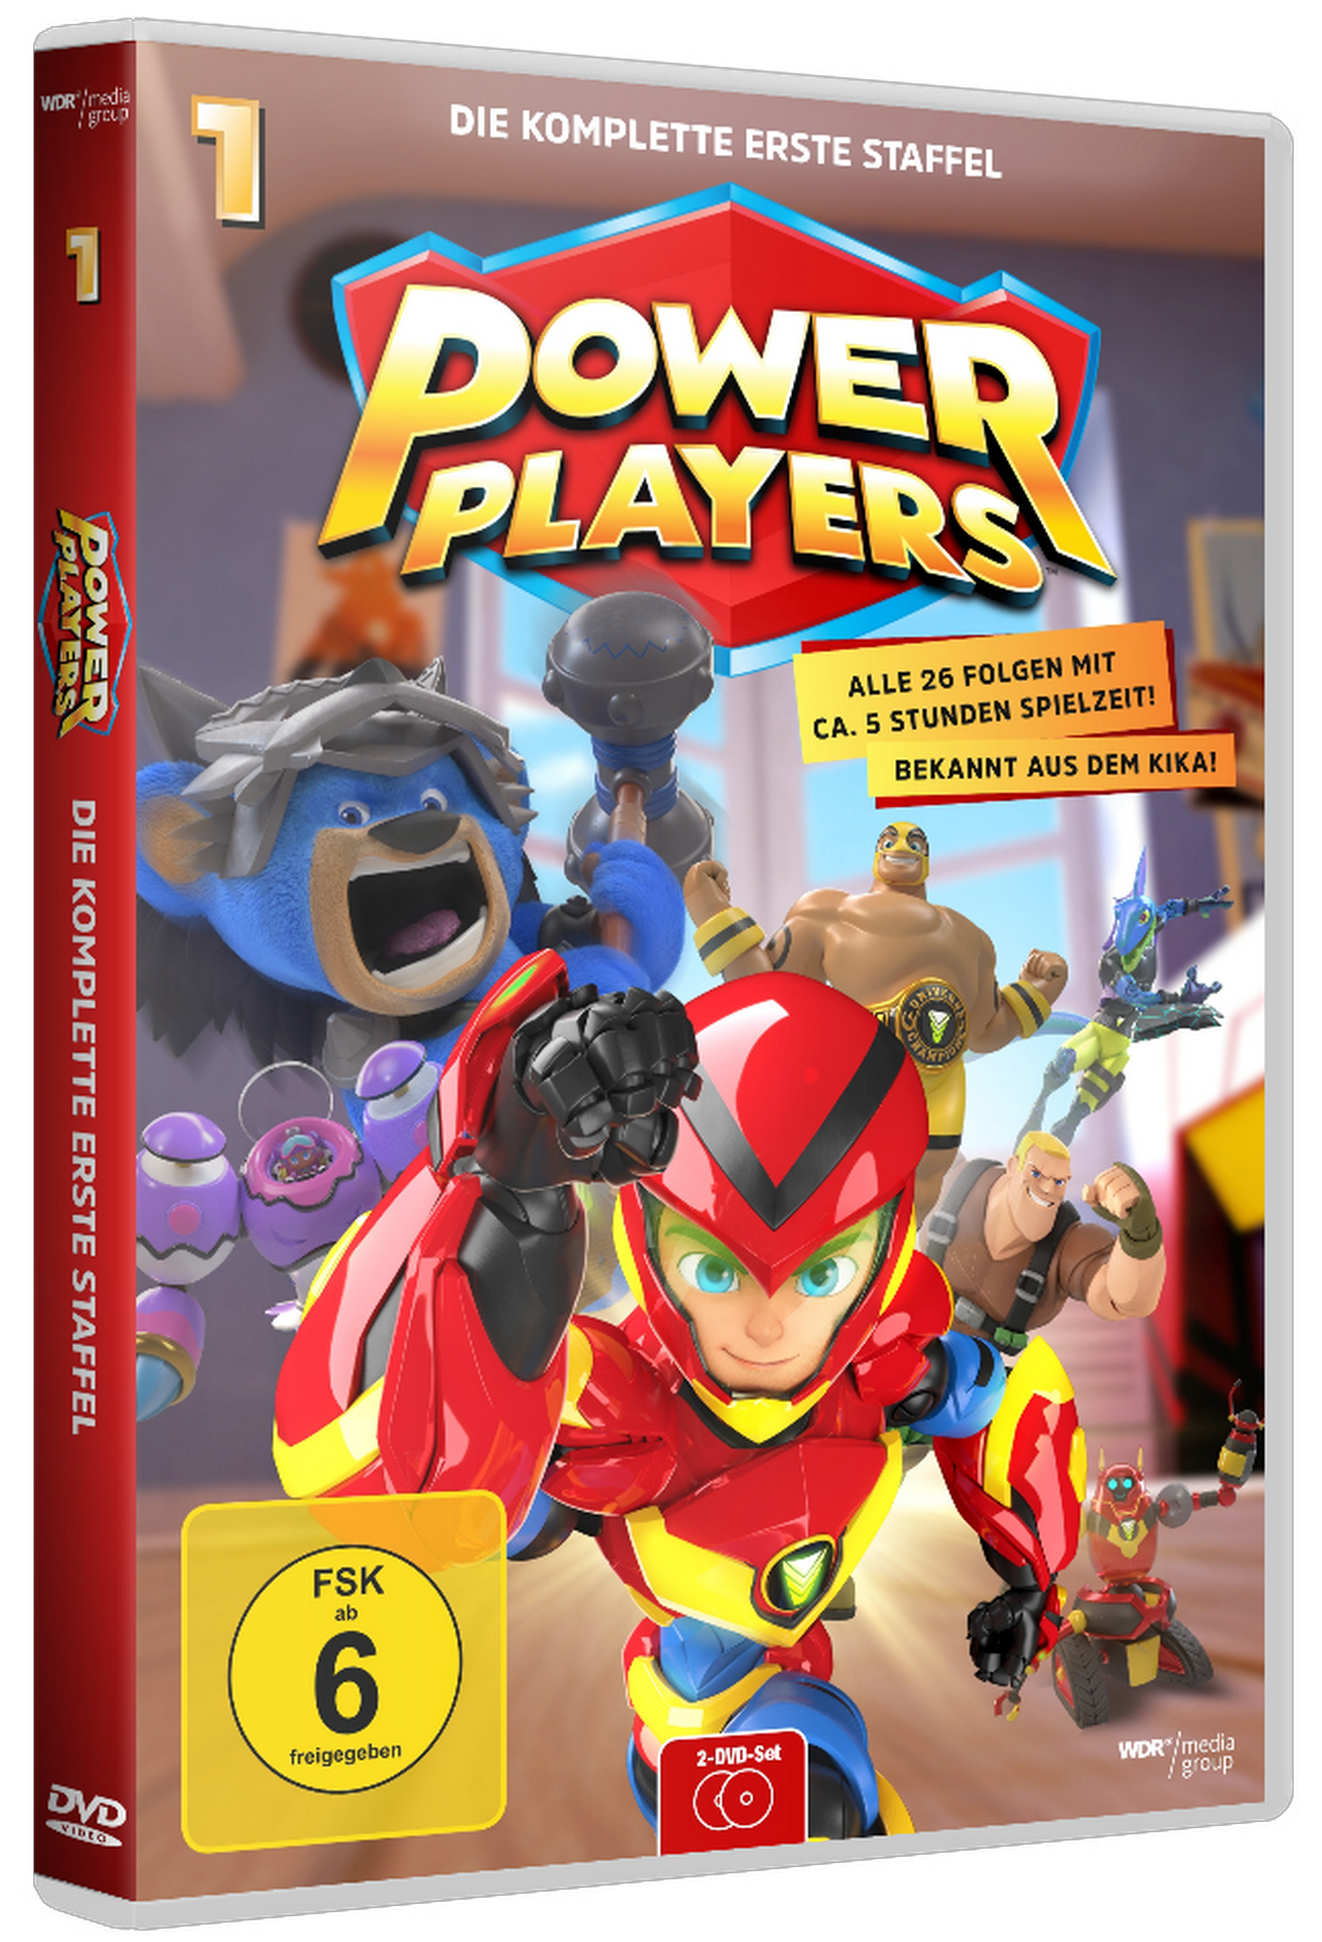 Power Players – Kinderserie anschauen